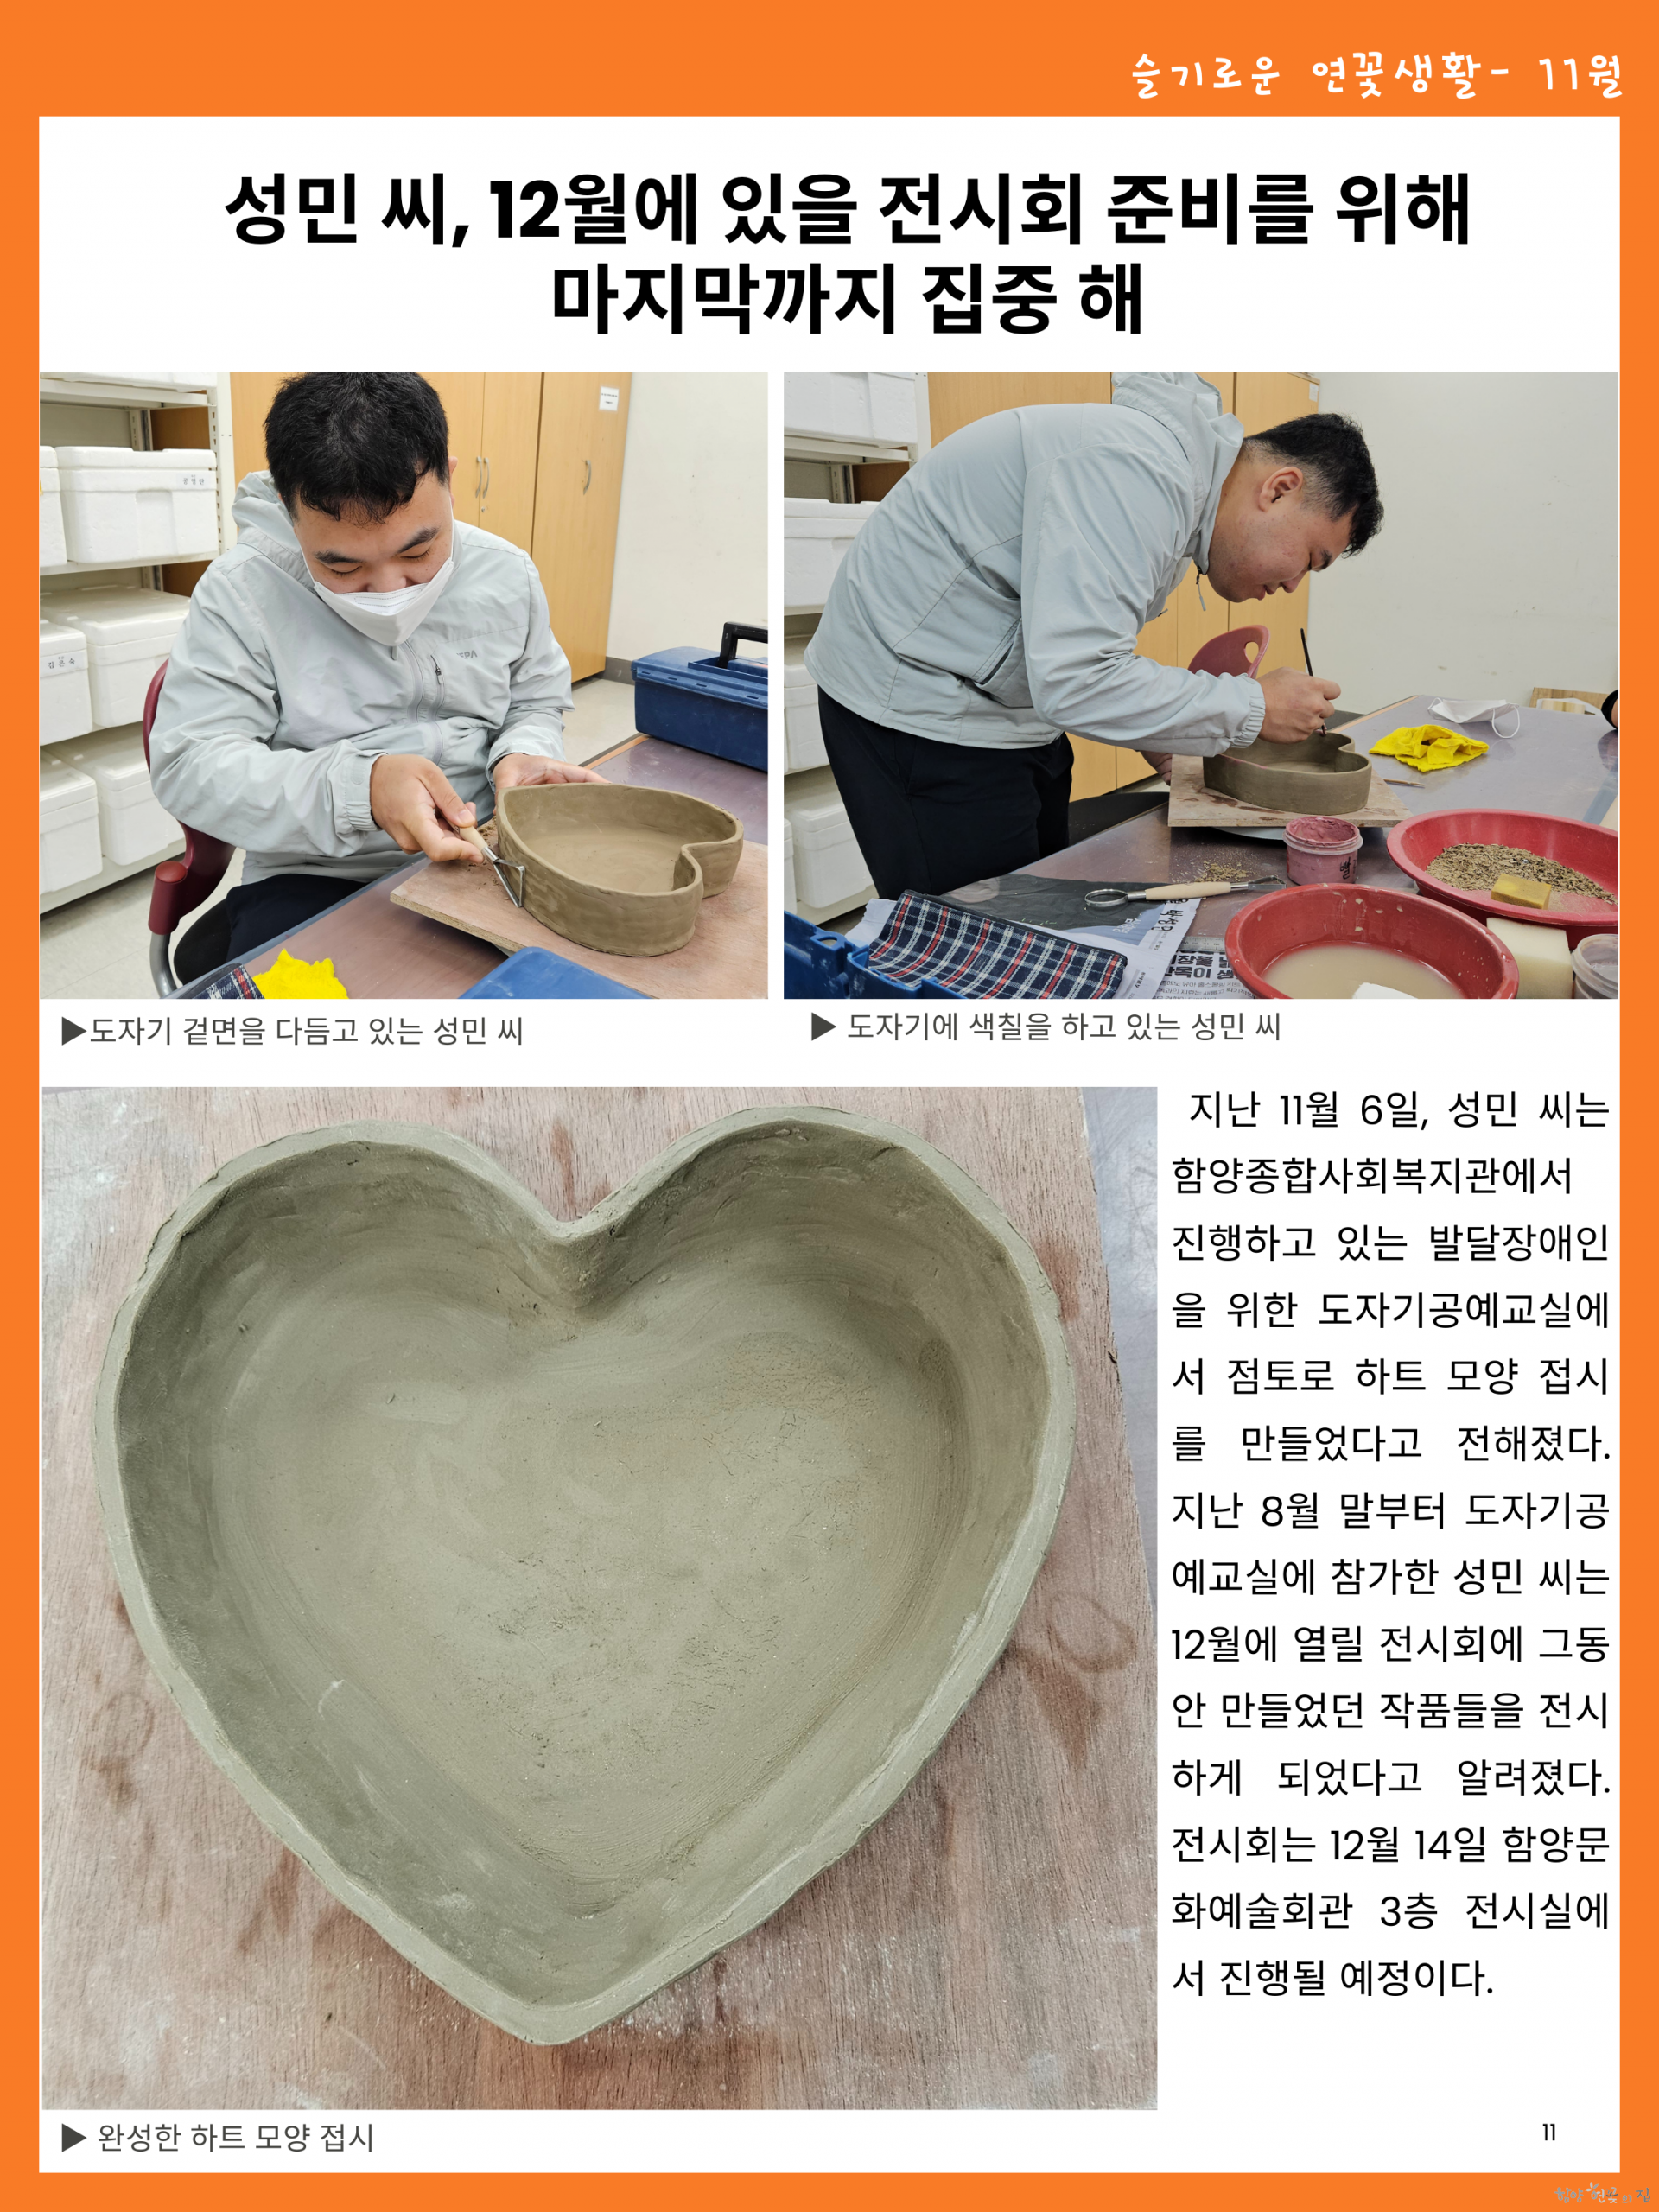 11. 슬기로운 연꽃생활 03 성민 씨, 도자기공예 교실에서 하트모양 접시 만들어.png